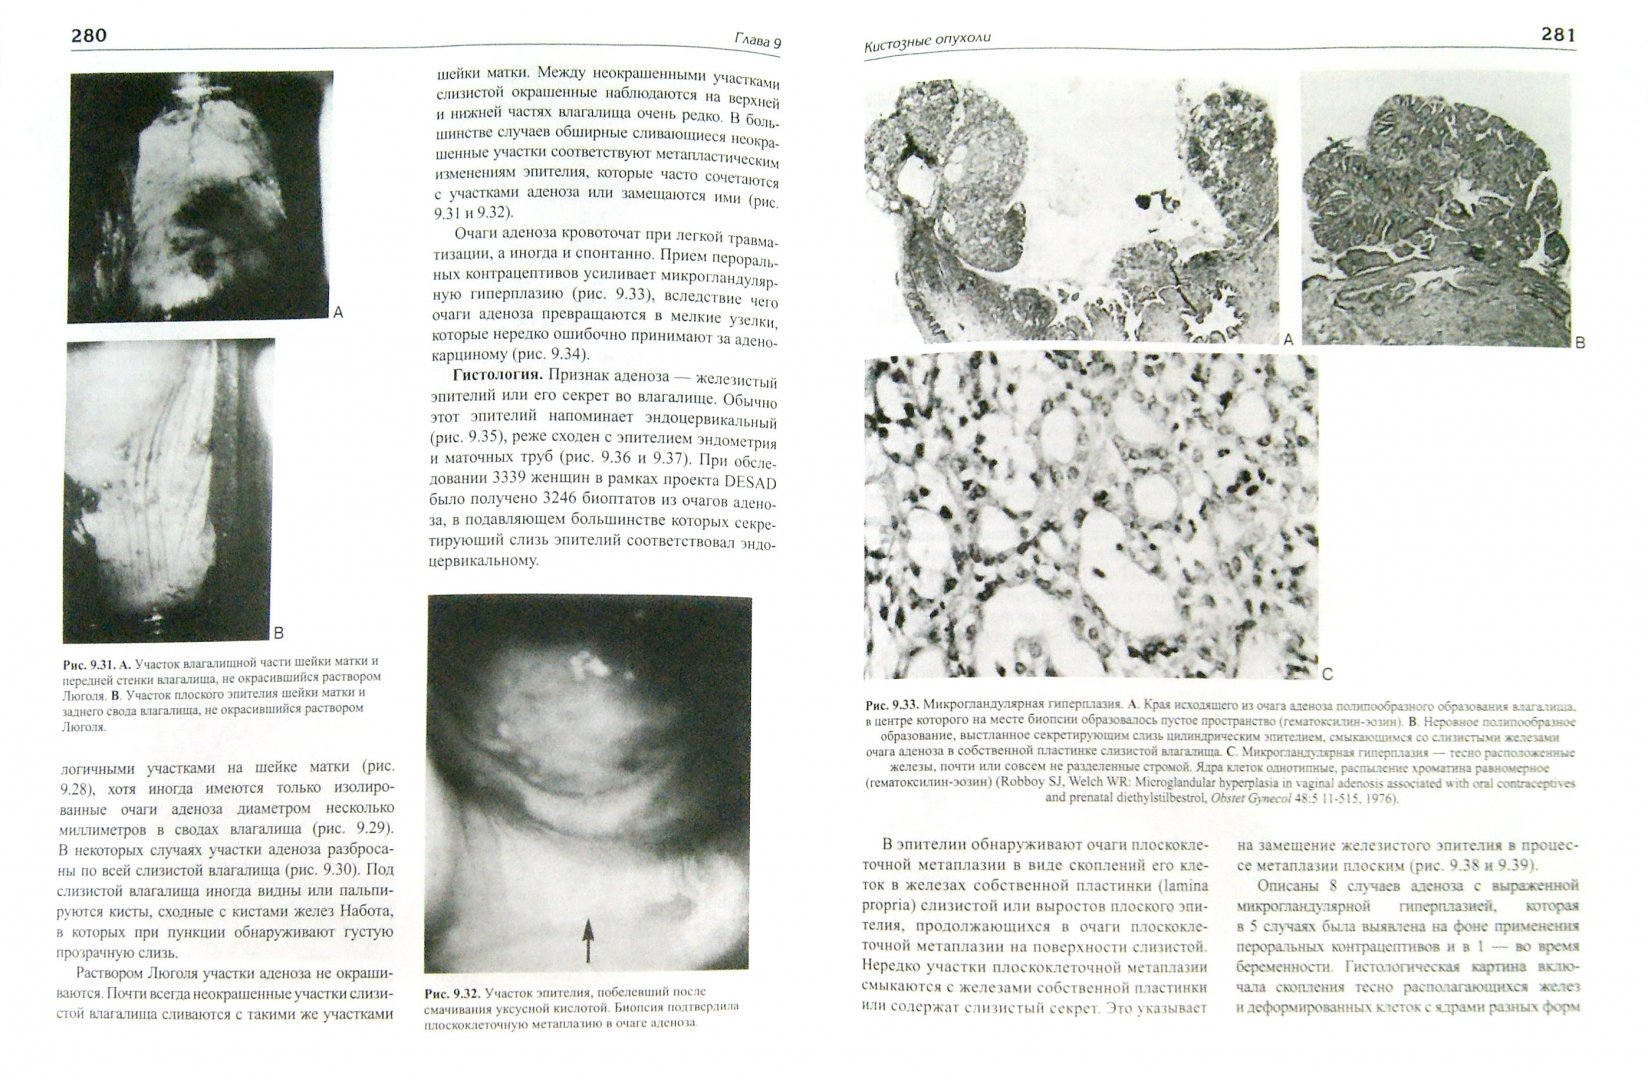 Иллюстрация 1 из 4 для Доброкачественные заболевания вульвы и влагалища - Кауфман, Браун, Фаро | Лабиринт - книги. Источник: Лабиринт